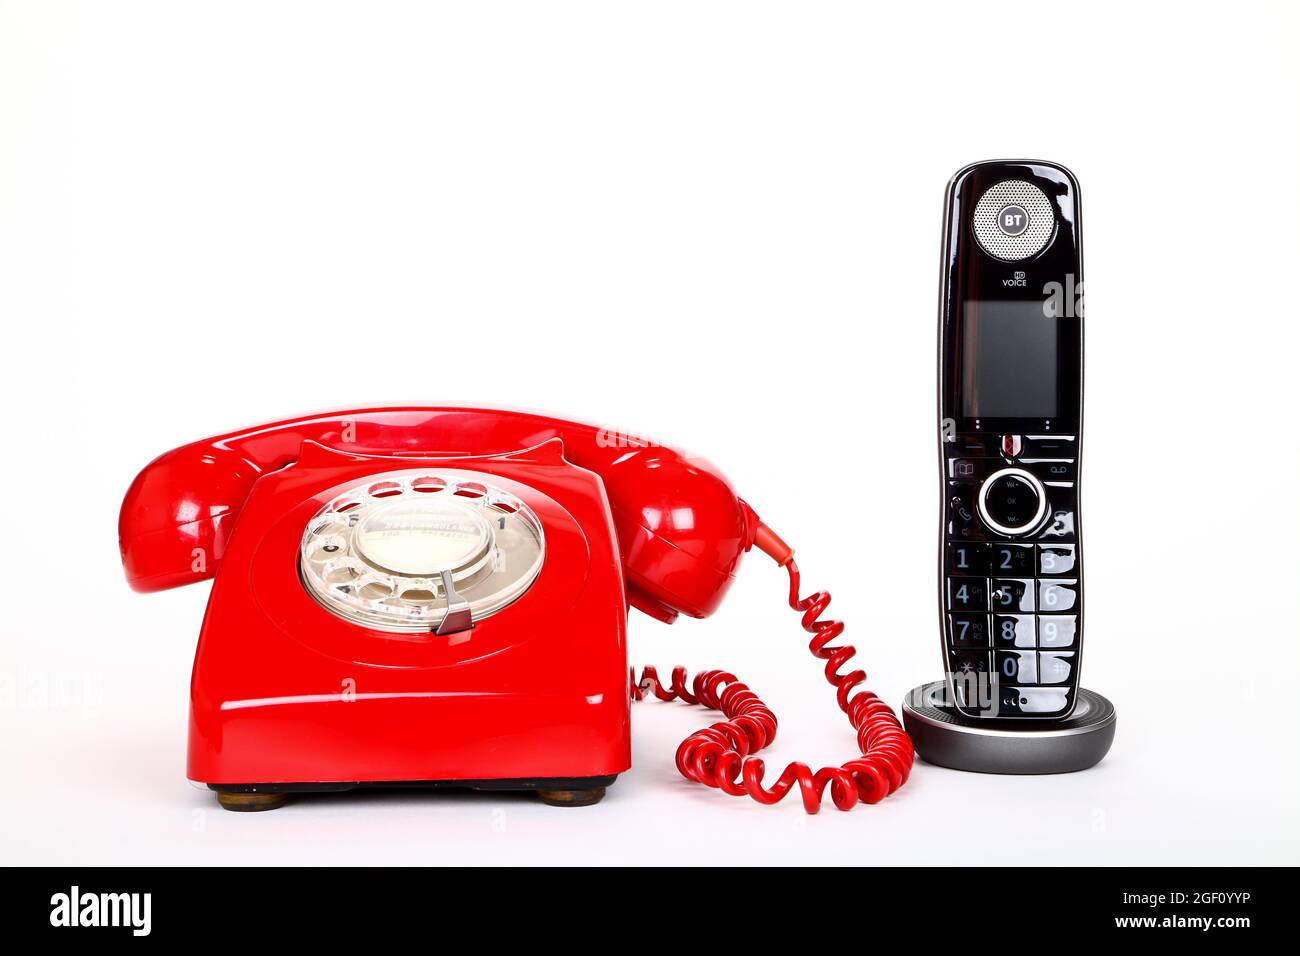 Nouveau téléphone personnel numérique avancé BT utilisant une connexion haut débit pour passer des appels téléphoniques de qualité HD à côté d'un ancien modèle GPO 746F vers les années 1970. Banque D'Images